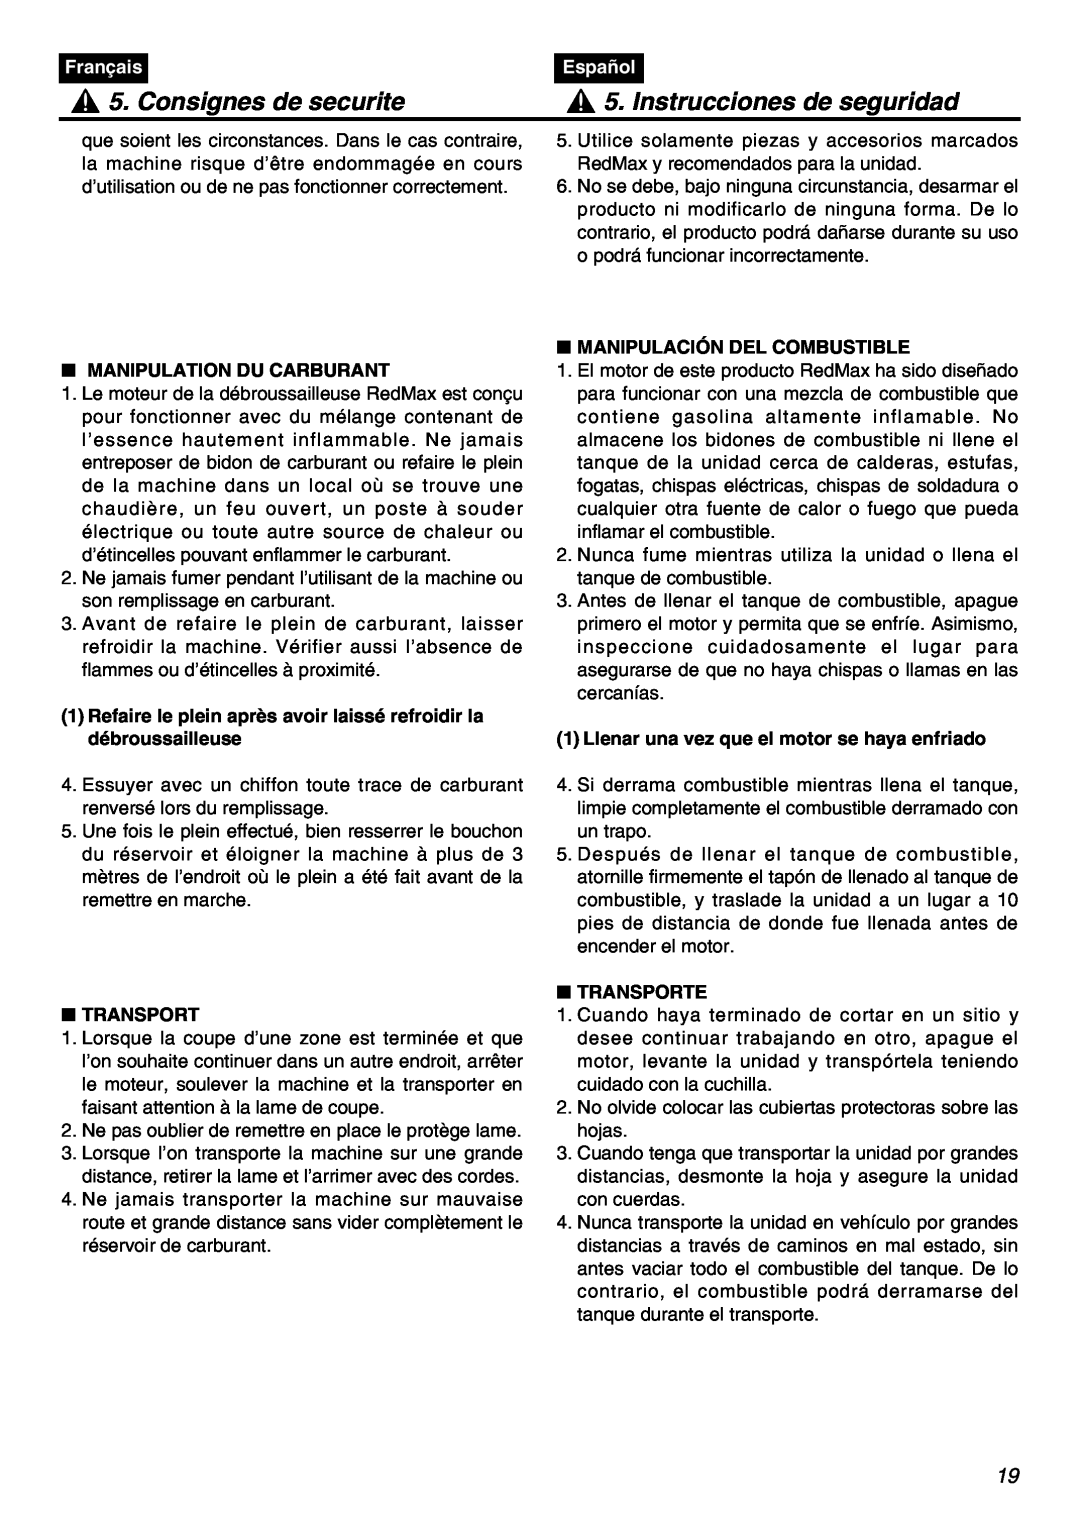 RedMax SRTZ2401F manual Consignes de securite, Instrucciones de seguridad, Français, Español, Manipulation Du Carburant 